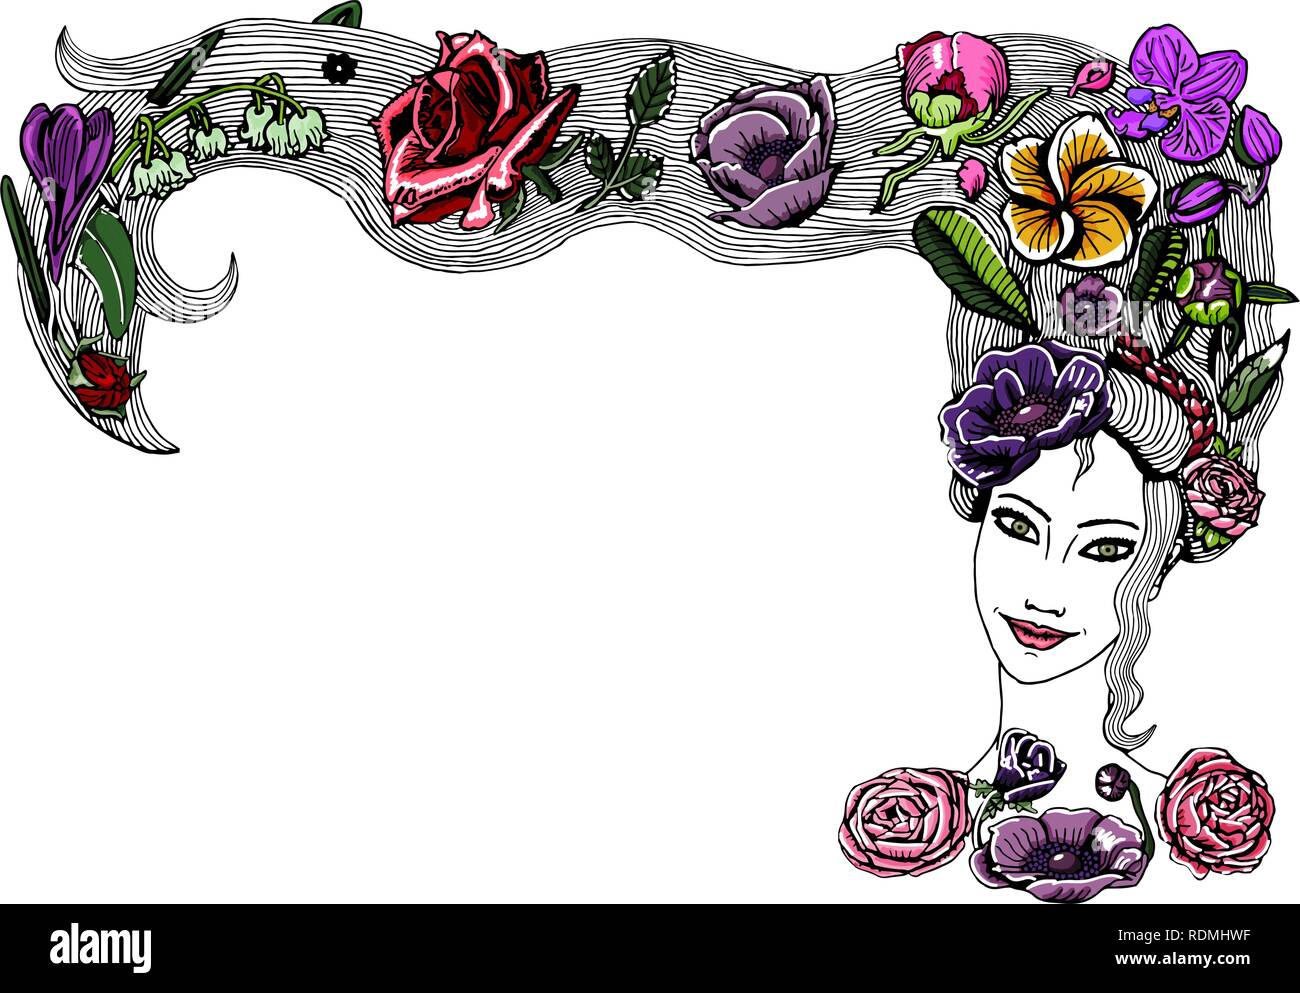 Bella ragazza giovane faccia con i capelli lunghi e fiori colorati, le gemme e le foglie in acconciatura. Primavera ragazza con peonia, rose, orchidea, anemoni flora. Illustrazione Vettoriale